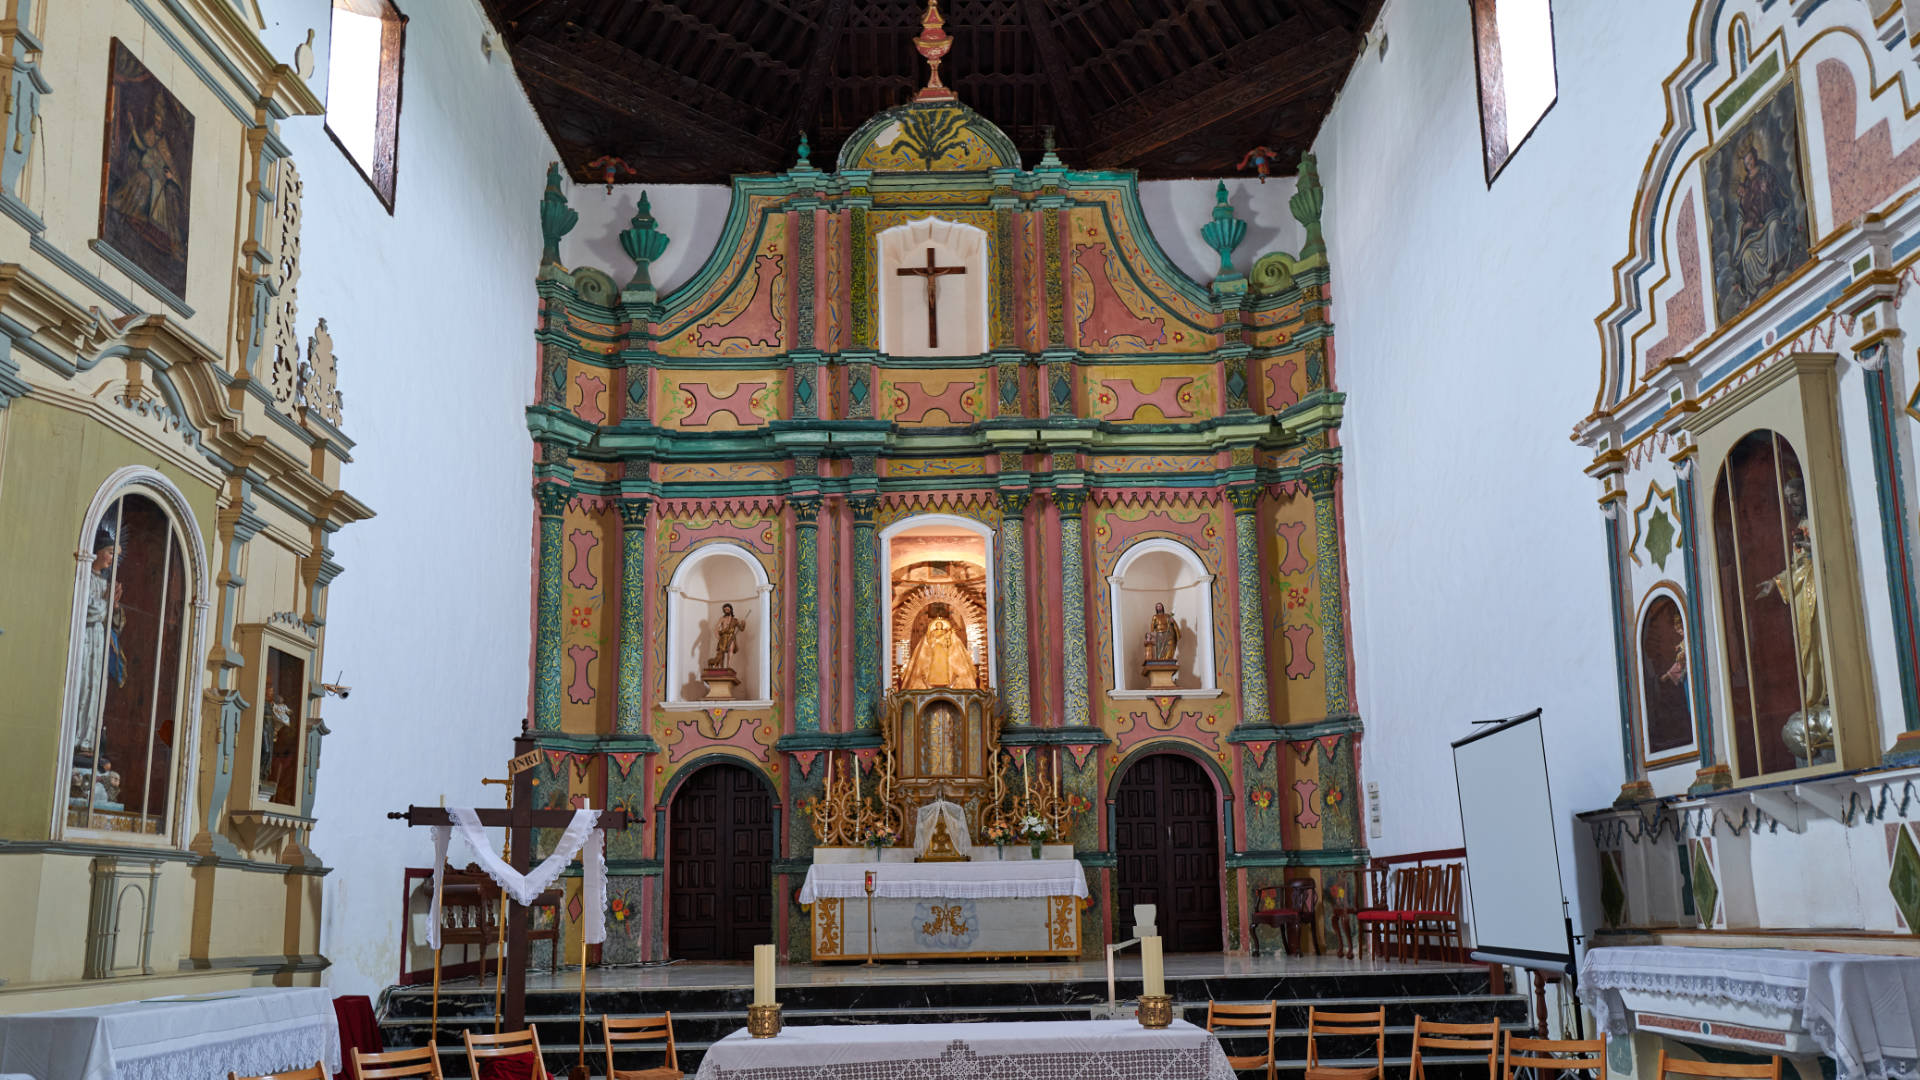 Iglesia Nuestra Señora de la Antigua Fuerteventura.